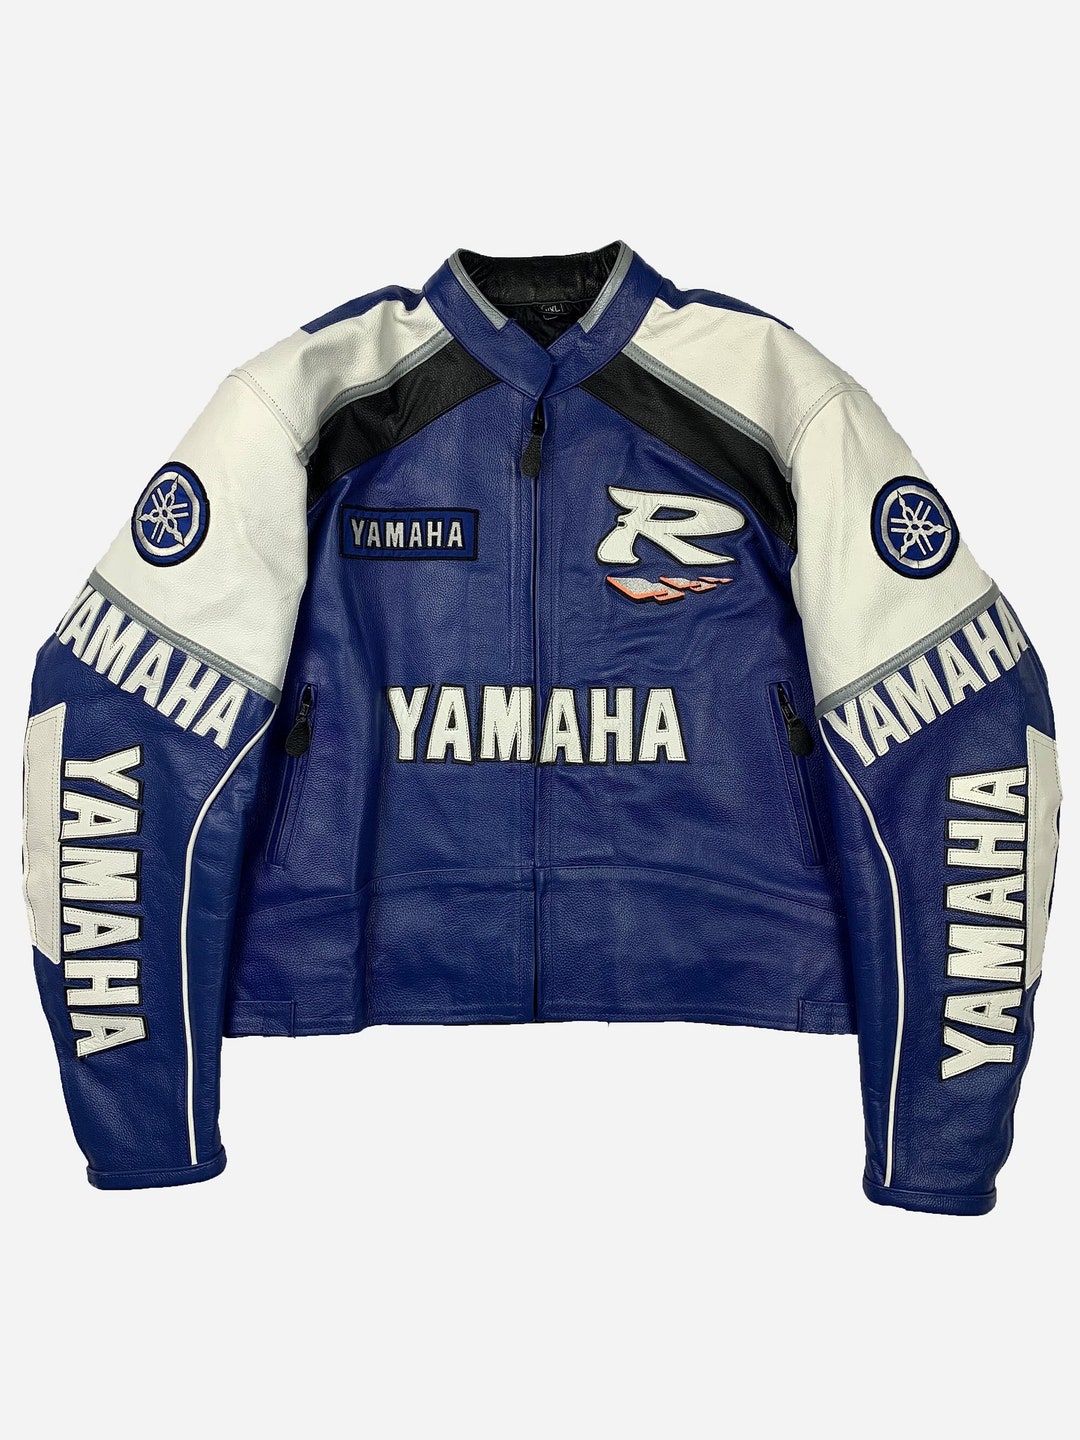 Vintage Yamaha Leather Racing Jacket Retro Racer Jacket - Etsy